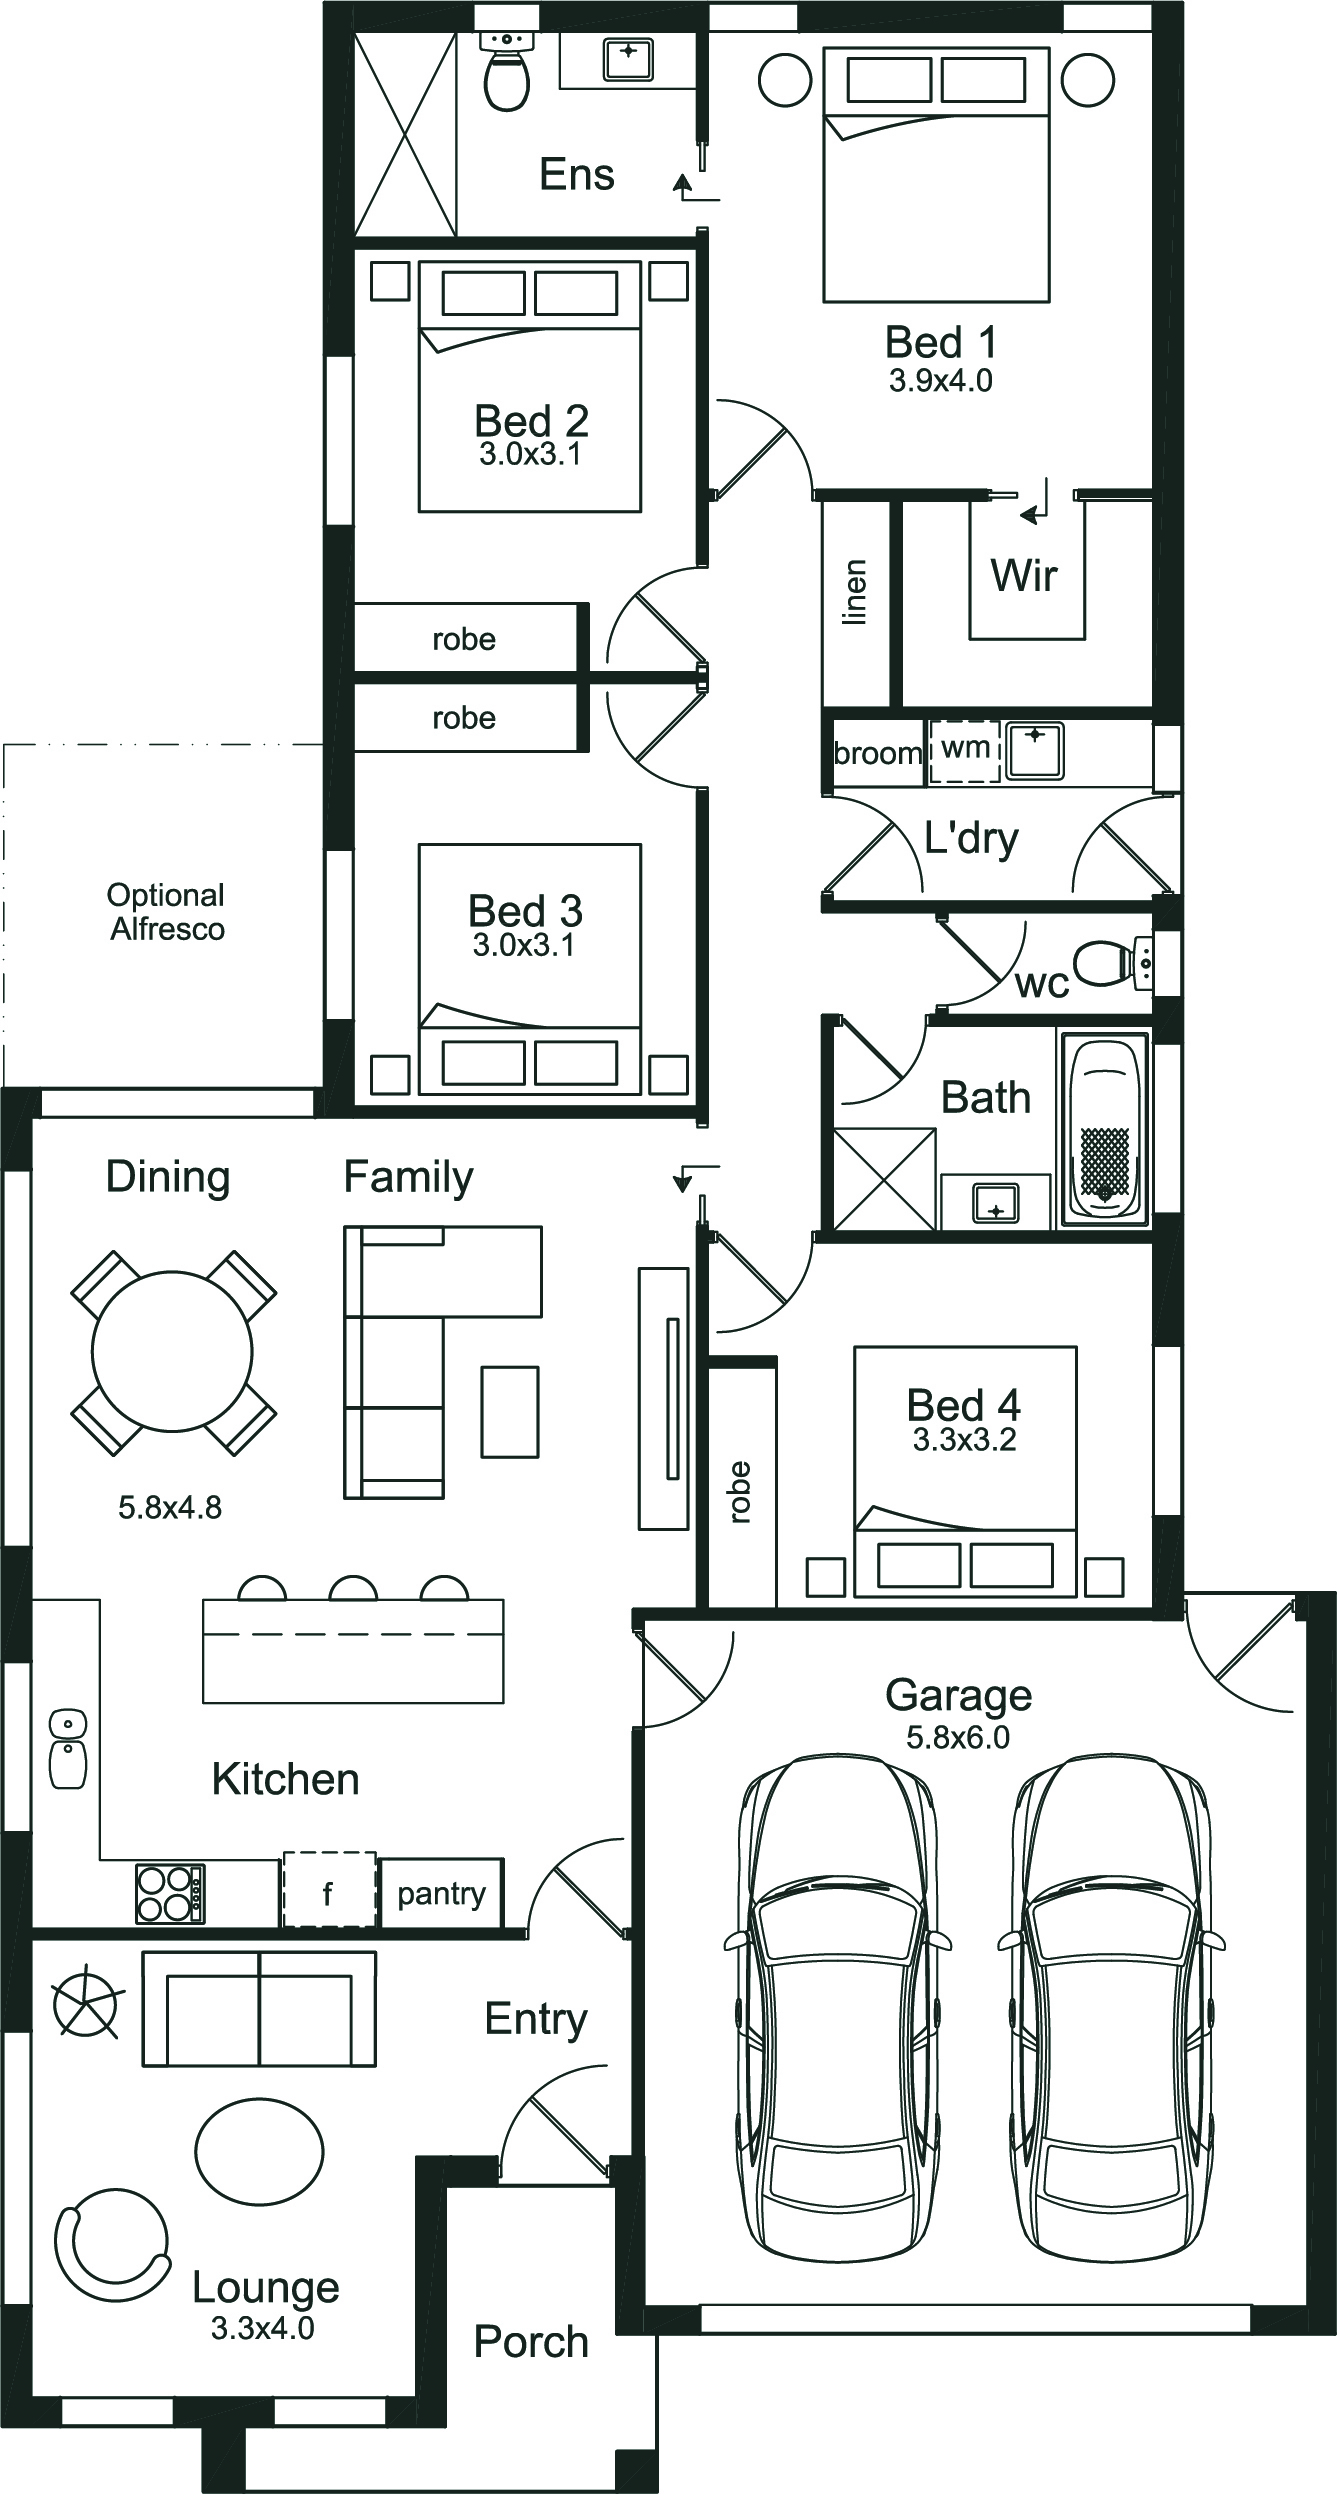 The Quartz floor plan image